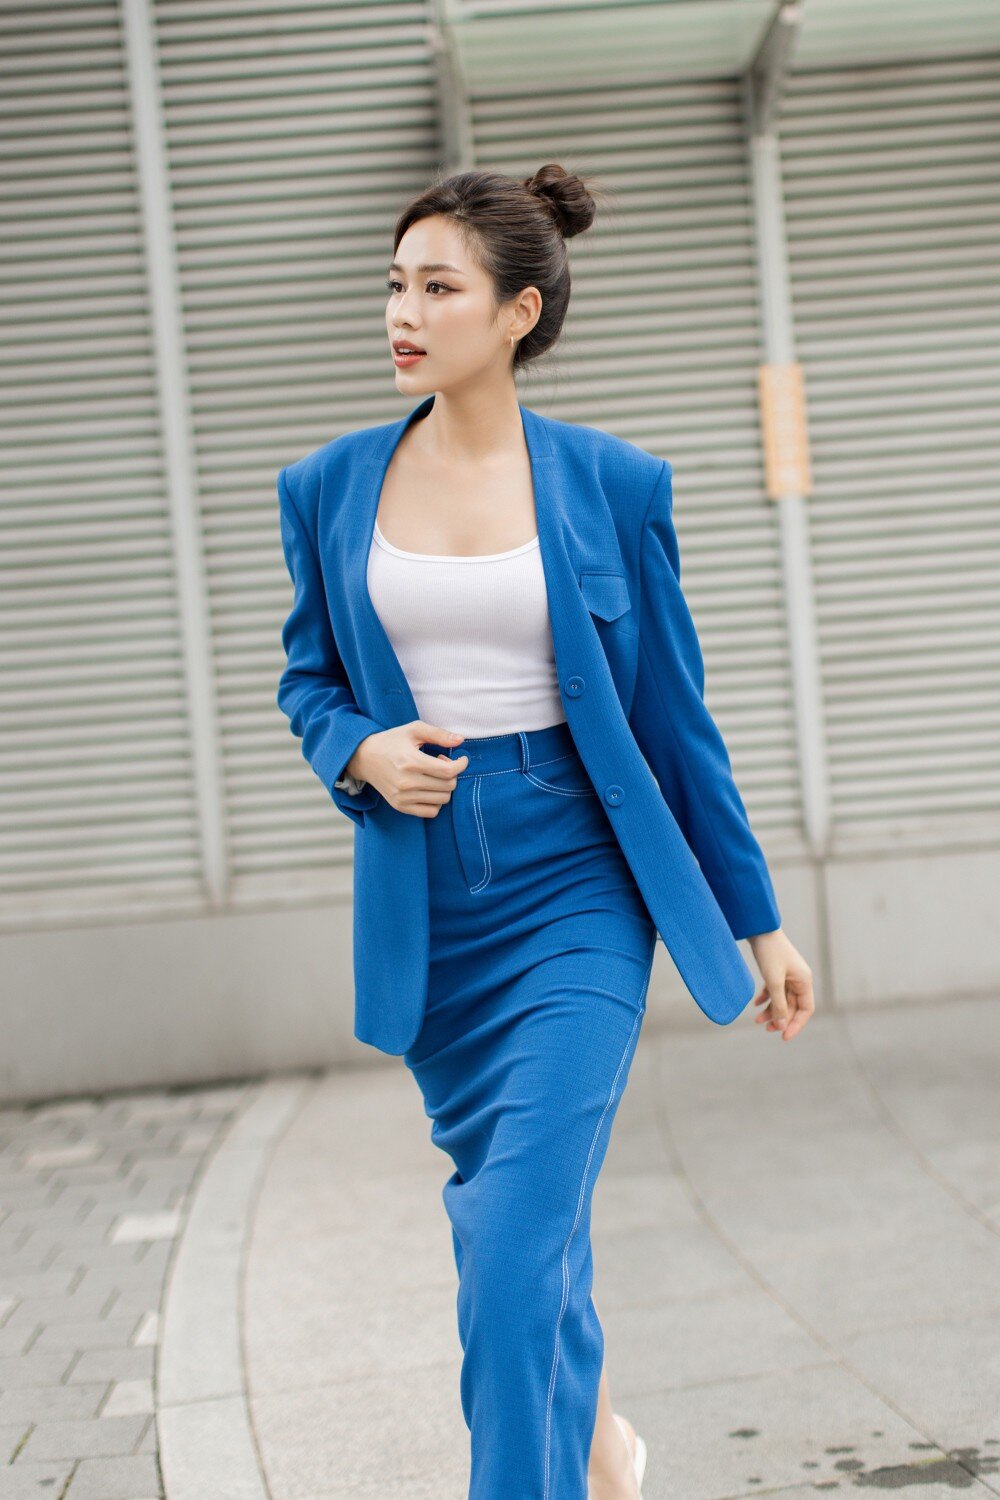 Hoa hậu Đỗ Thị Hà lên đồ đẹp chuẩn nữ CEO ở tuổi 22